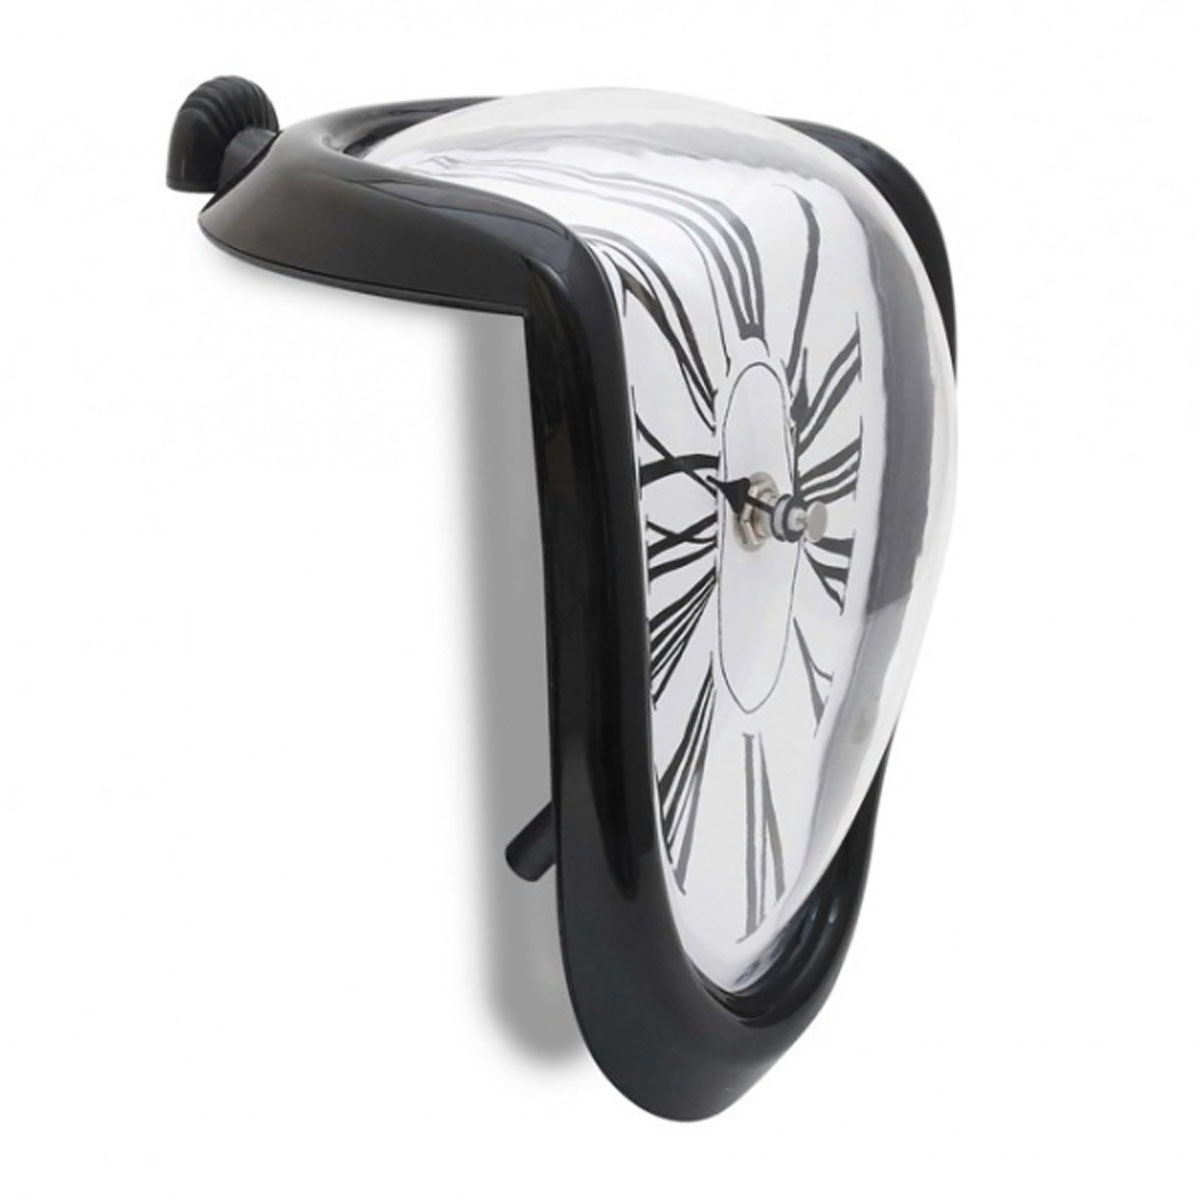 Schmelzende Uhr Zerfliessende Wanduhr Design Melting Clock ...